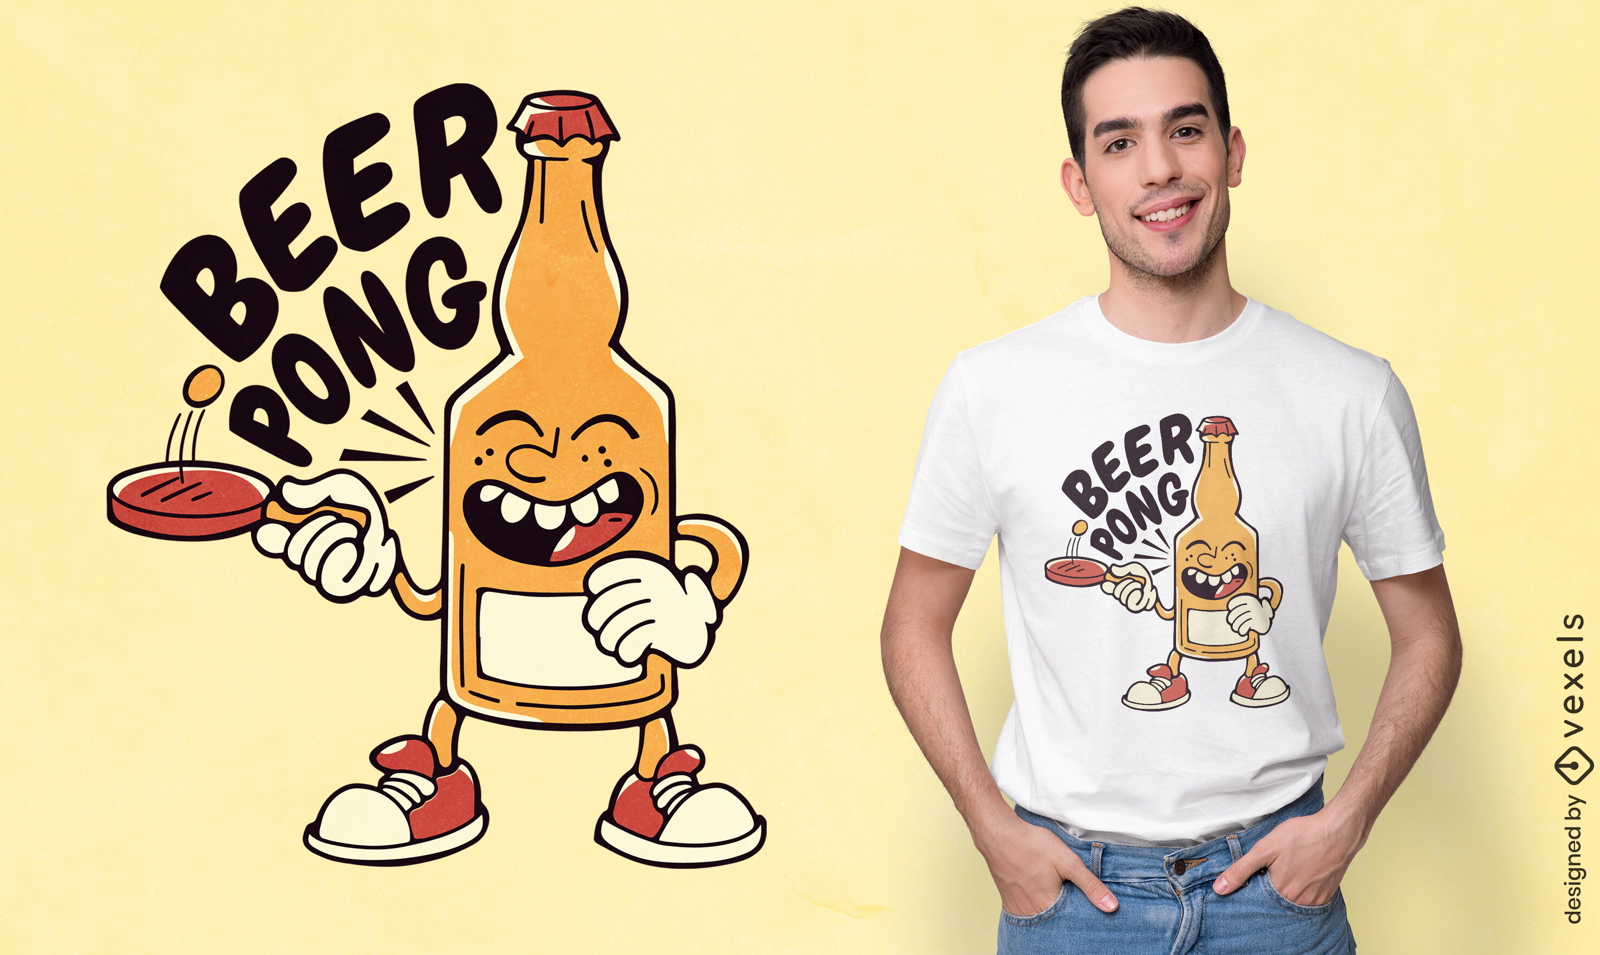 Dise?o de camiseta de personaje de cerveza pong.